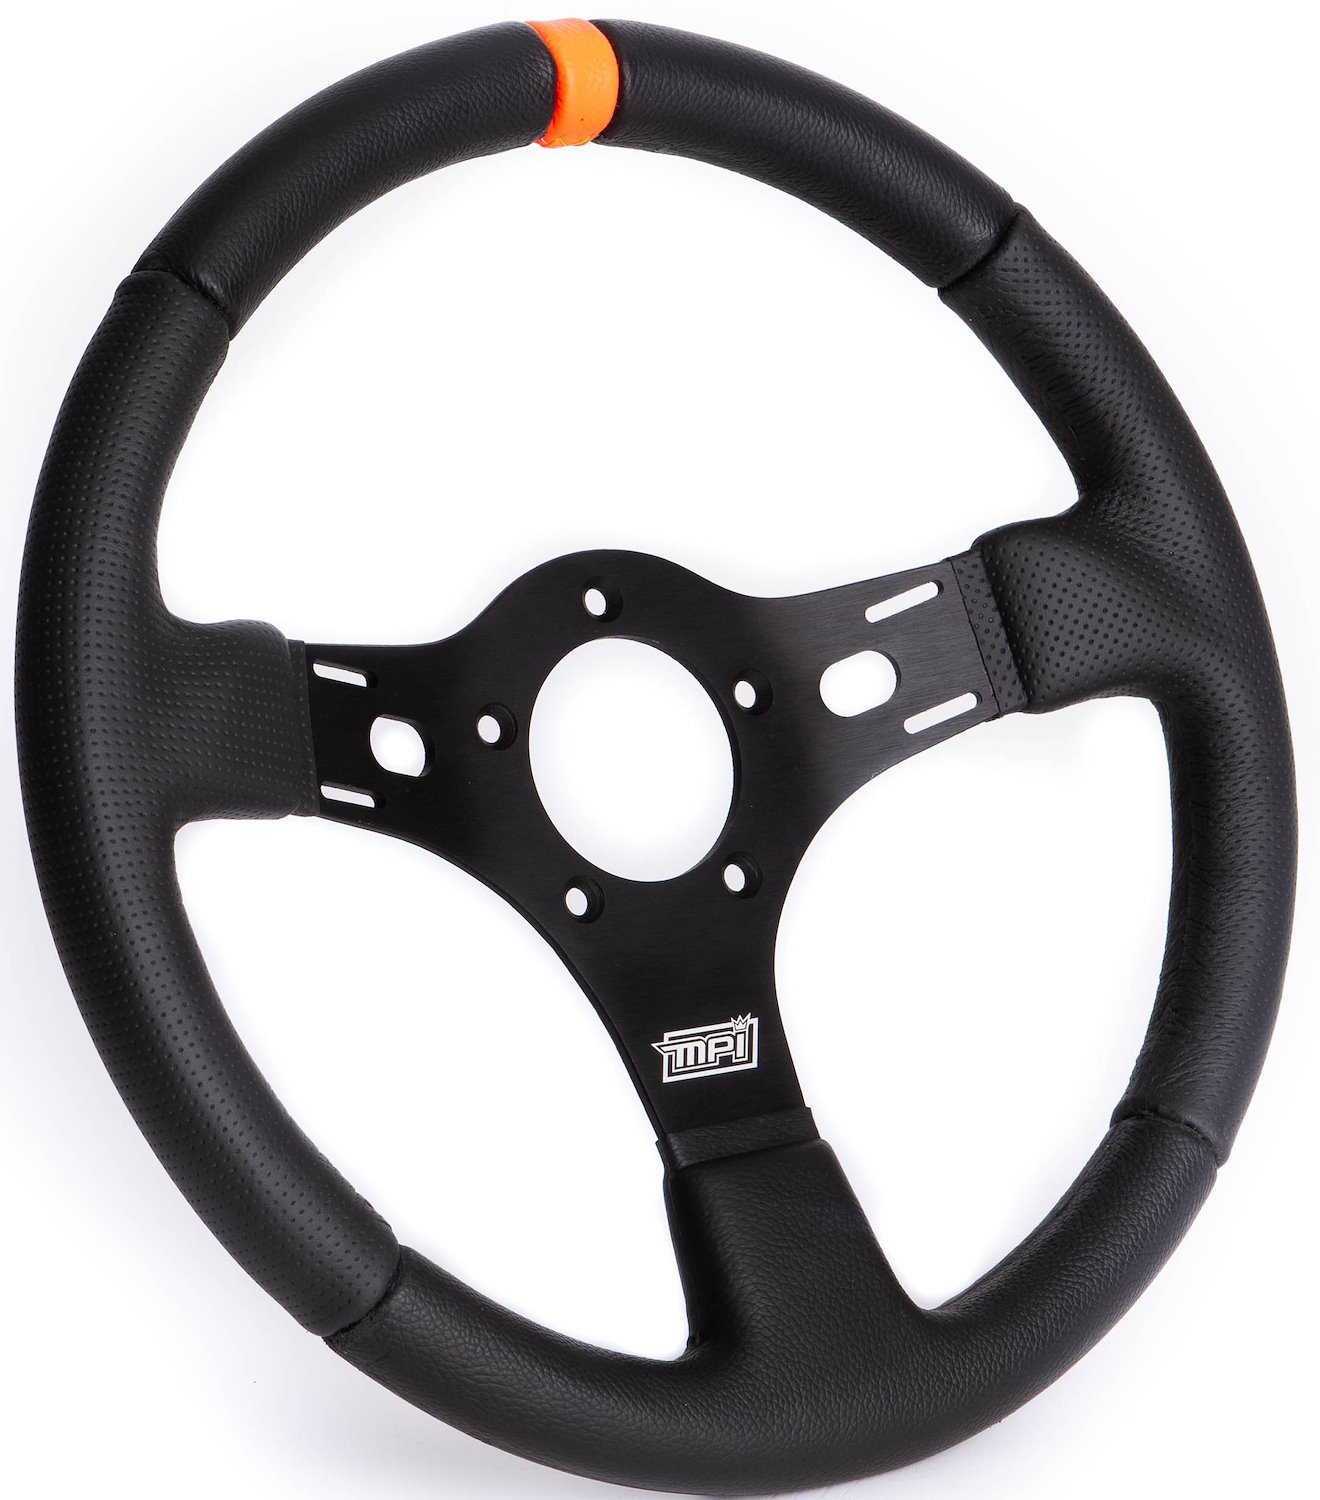 Drag Race Steering Wheel 13 in. Diameter, Orange Center Marker